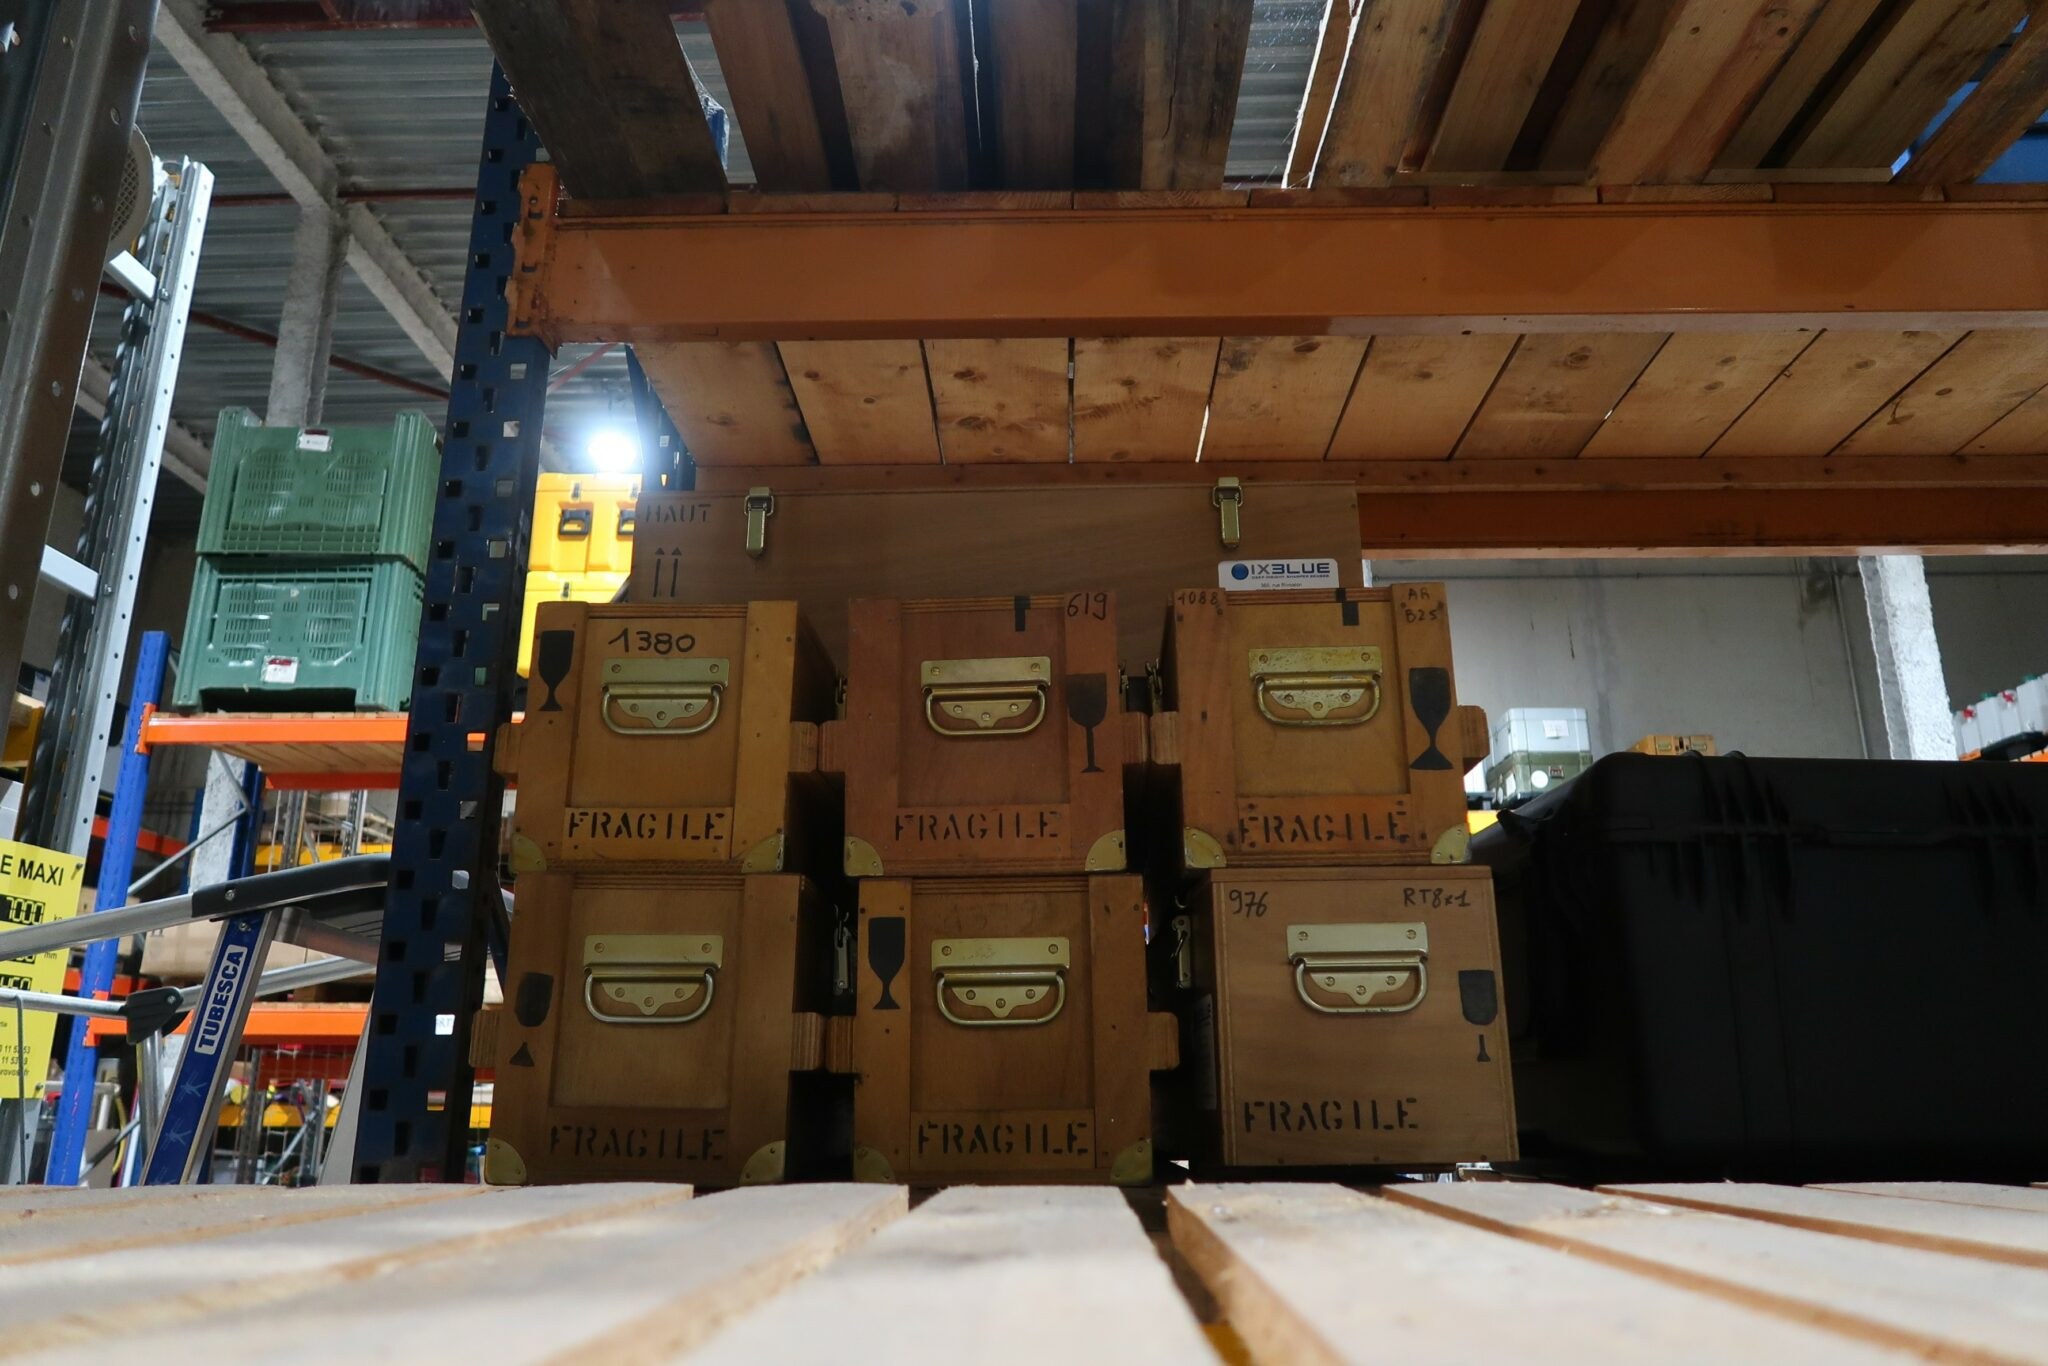 Auparavant, les carottes de glaces prélevées en Antarctique étaient transportées jusqu’en France dans ce type de boîtes en bois pour être étudiées. Aujourd’hui, elles sont acheminées dans des caisses isothermes, elles-mêmes stockées dans des conteneurs mis sous tension pour créer du froid en continu.